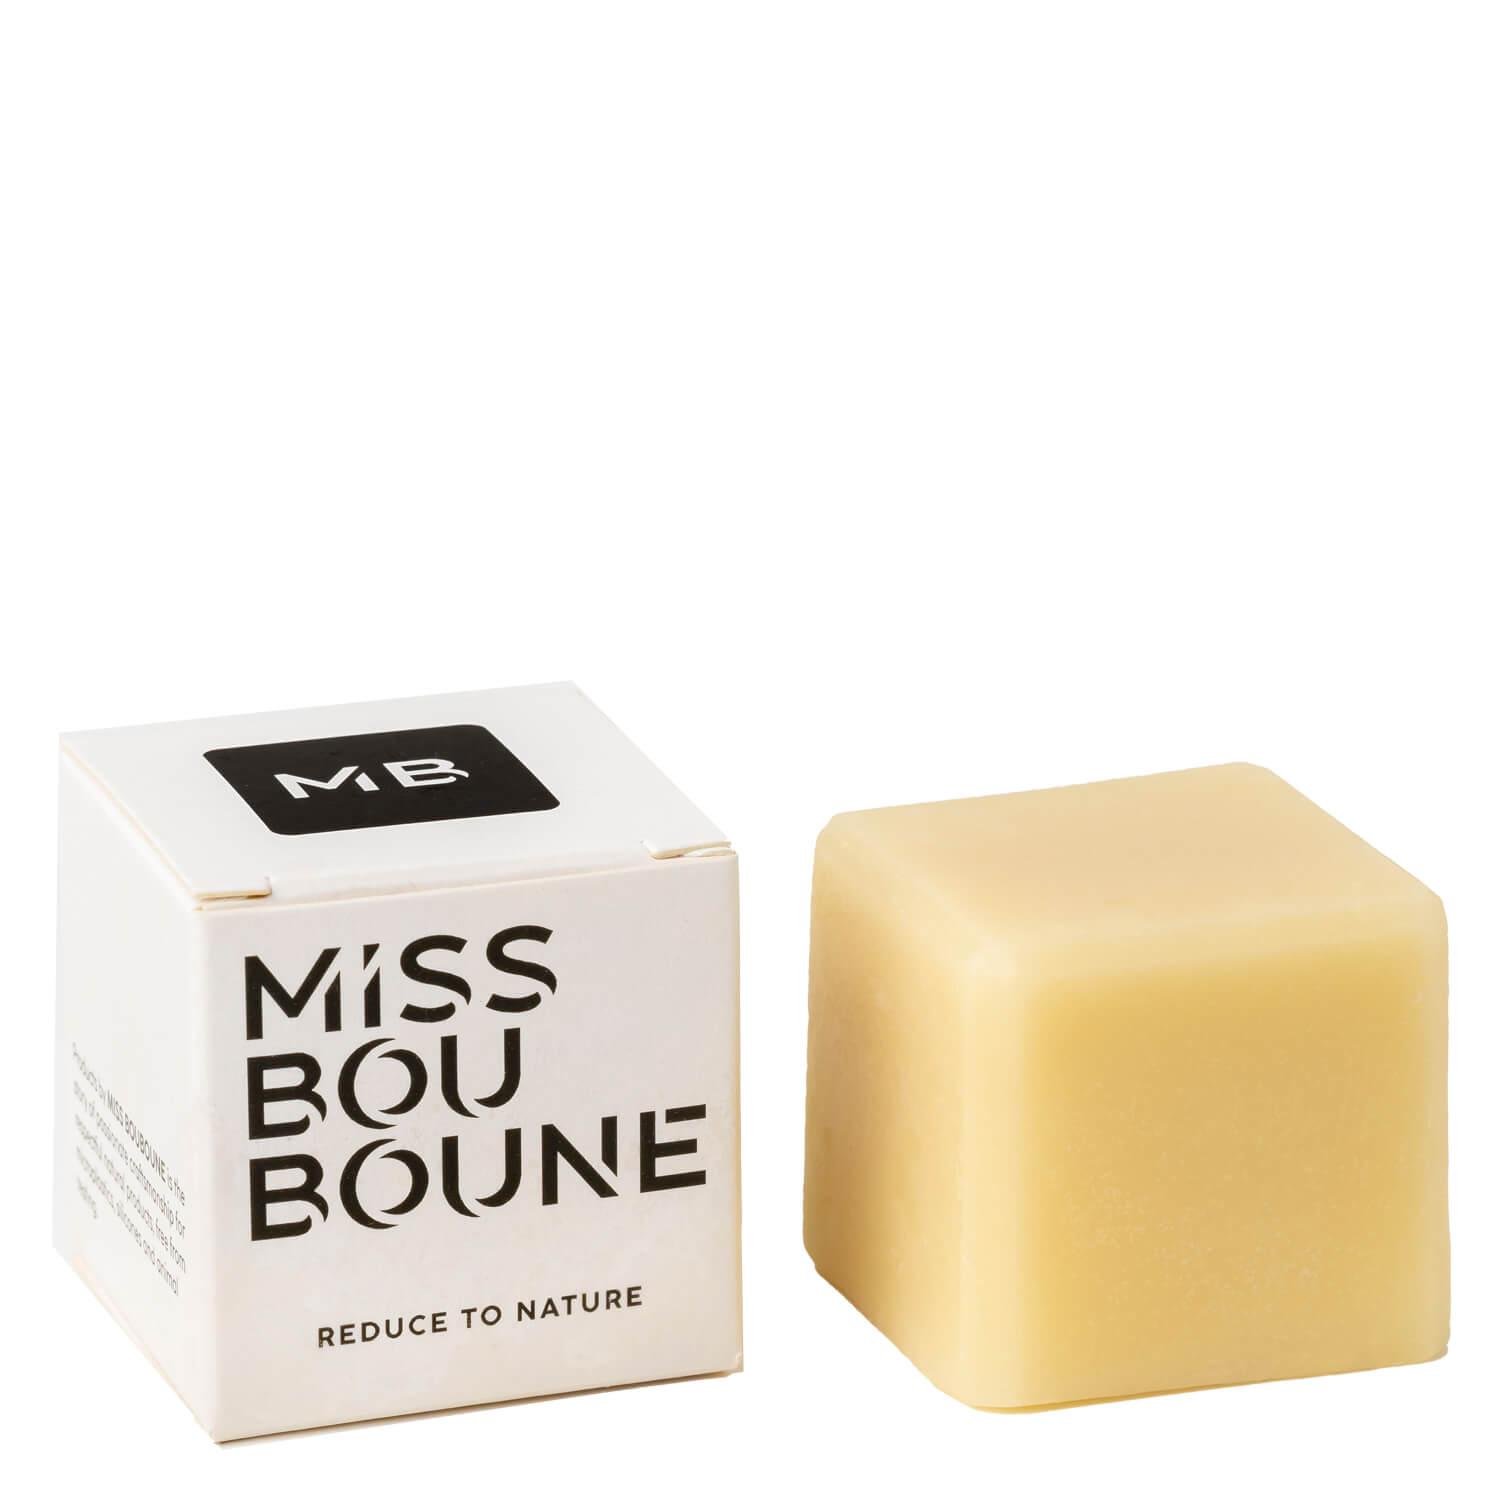 Miss Bouboune - Après-shampoing en barre